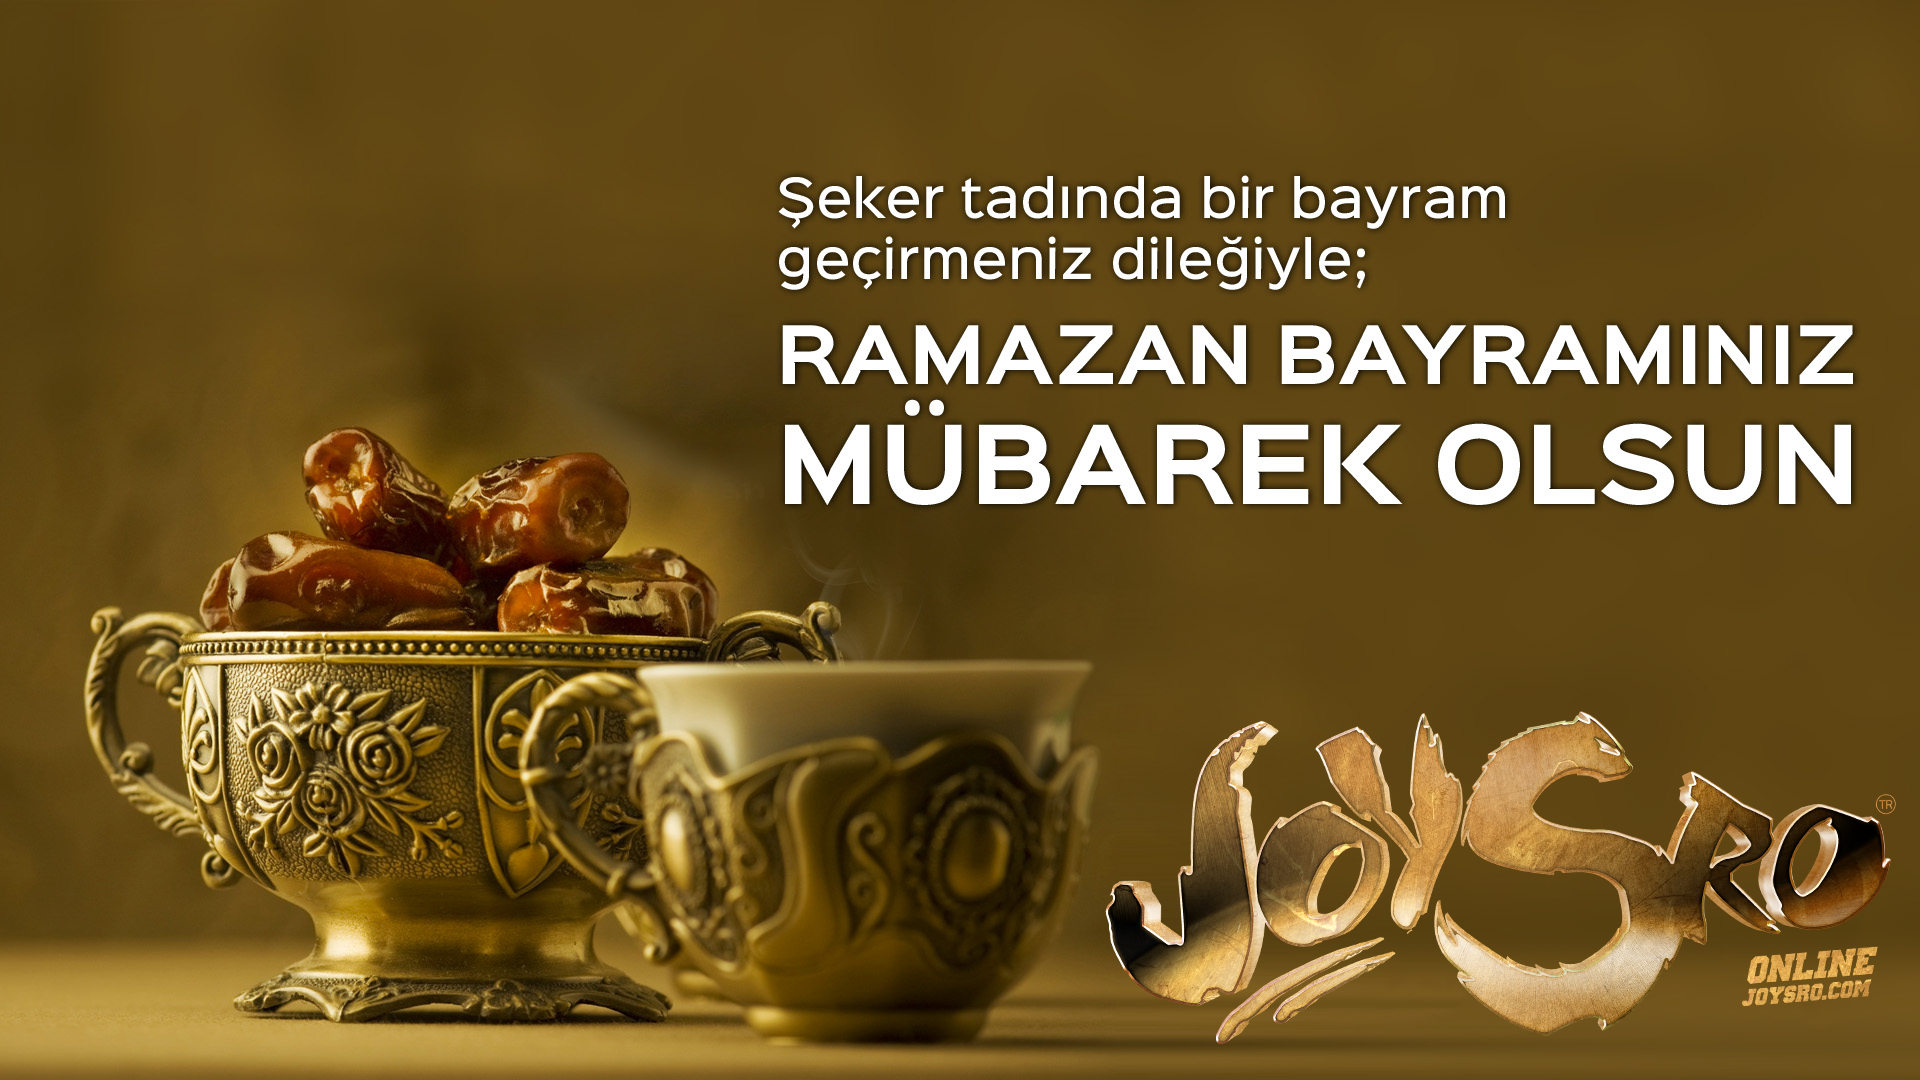 Поздравление с рамаданом на турецком языке. Рамазан байрам. Байрам Мубарек. Ураза байрам Мубарек олсун. Ураза байрам хаирлы олсун.